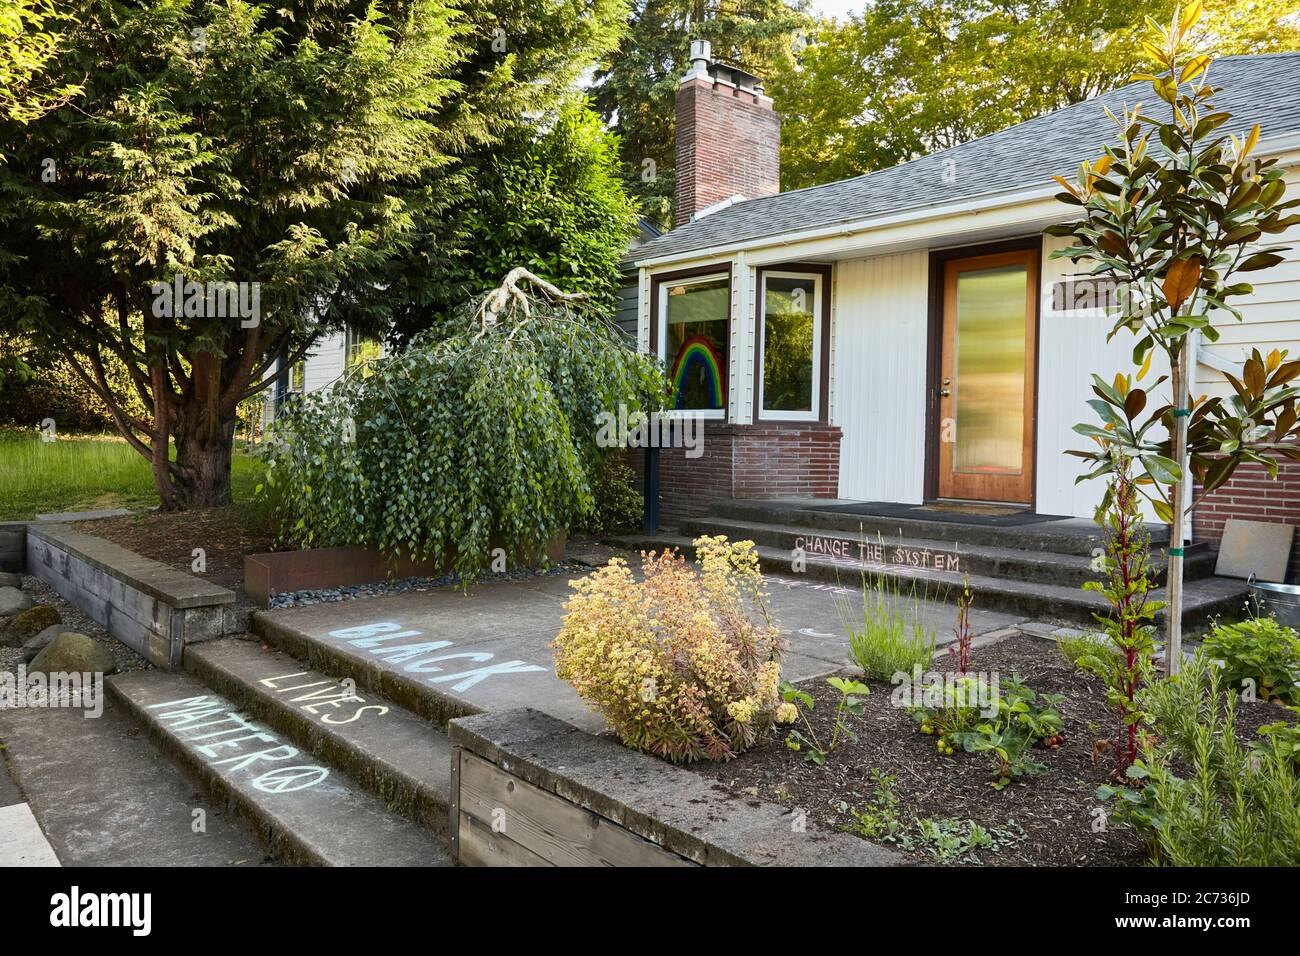 Portland, Oregon, États-Unis - 2 juin 2020 : vue latérale d'une maison de style du milieu du siècle avec le dit « Black Lives Matter » écrit en craie sur leur SID avant Banque D'Images